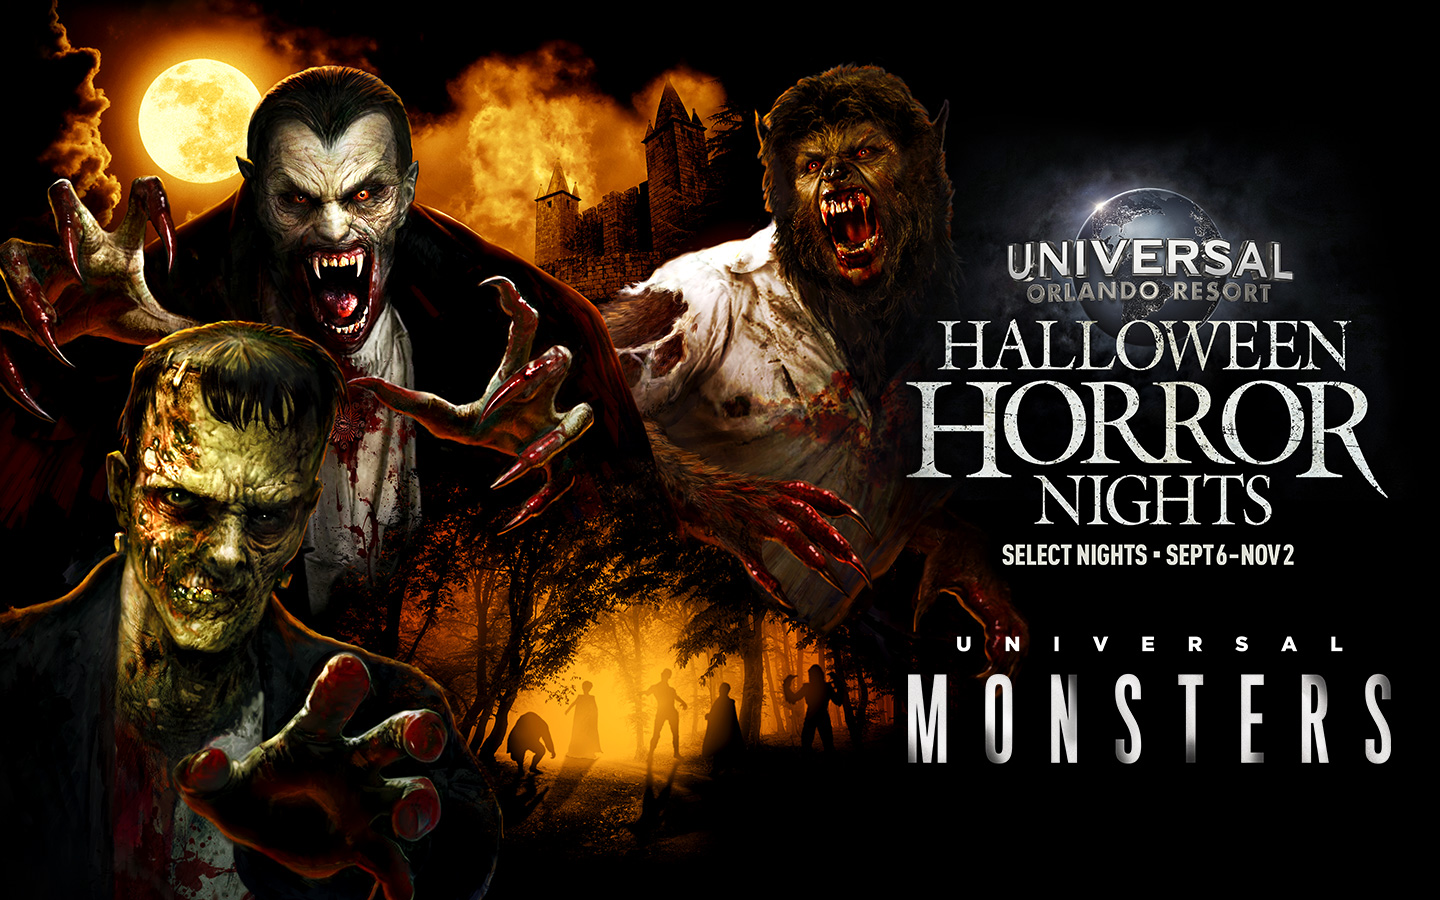 Universal Monsters anunciado para Halloween Horror Nights 2019